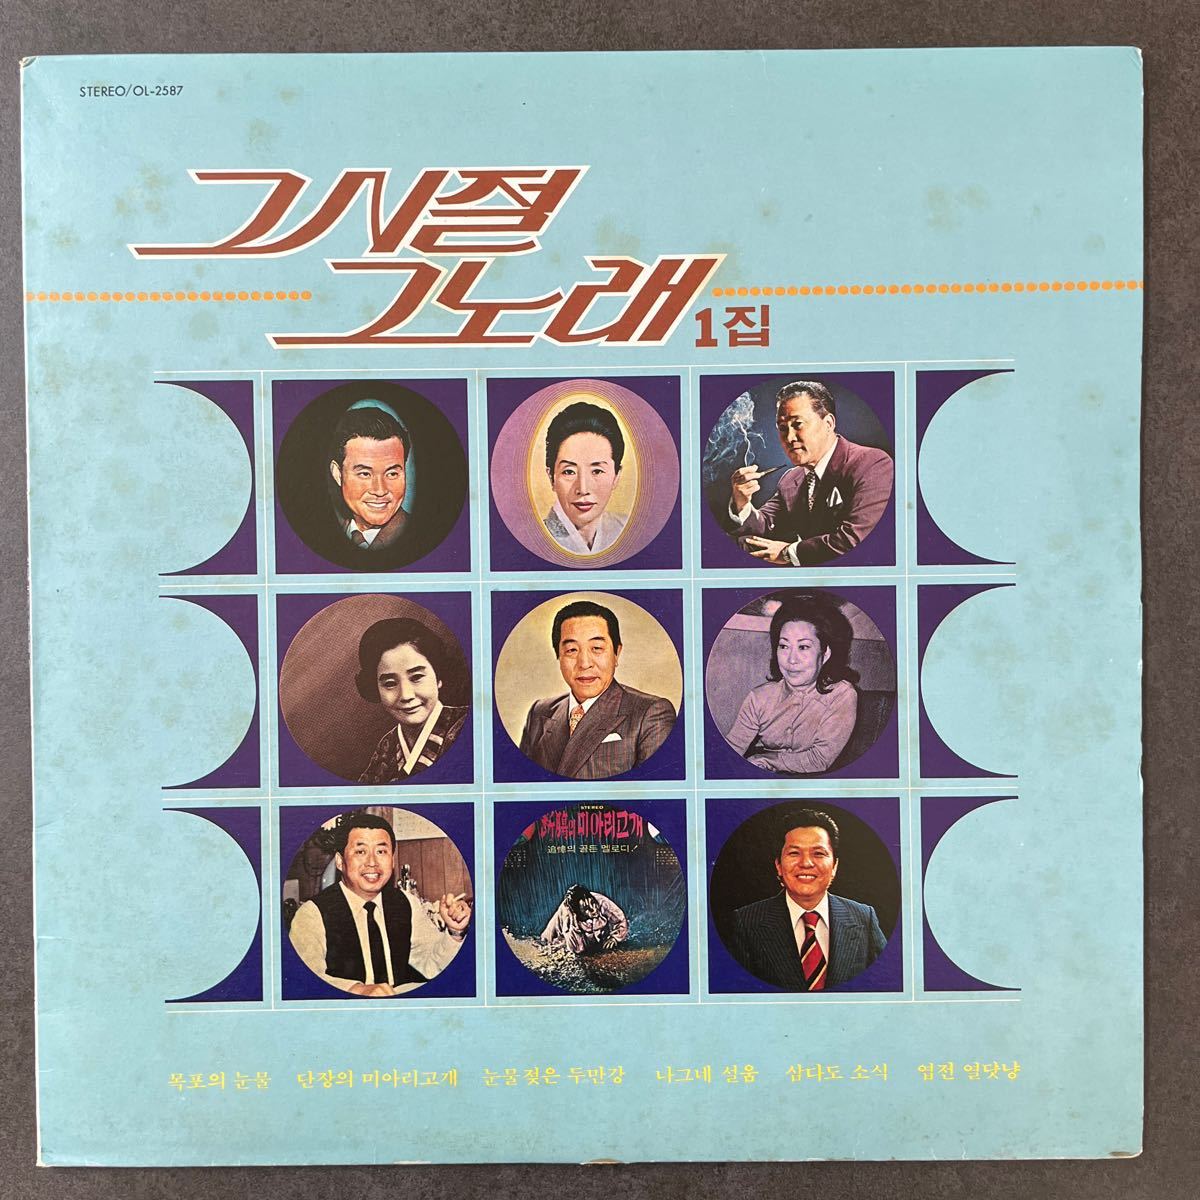 1 その時その歌1集 OL-2587 韓国歌謡 コリアンポップスの画像1